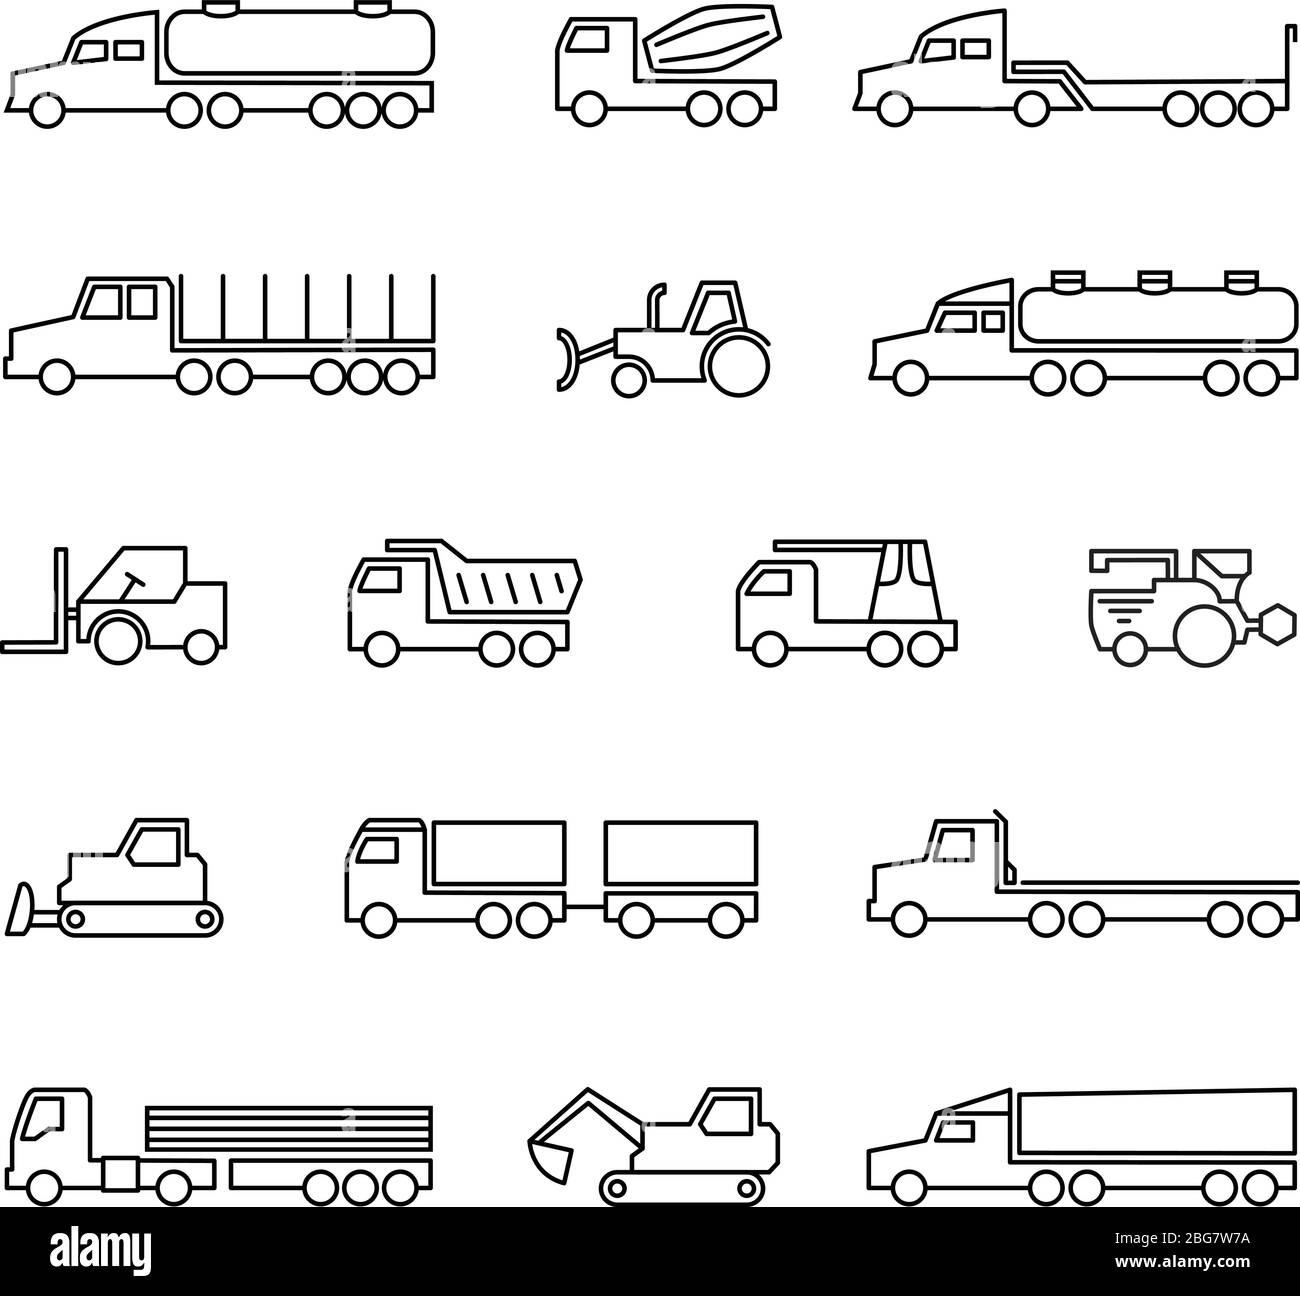 Baumaschinen. Symbole für LKW, Traktoren und schwere Geräte. Vektor Transport Traktor, Transportmaschine Bulldozer und Lader illustra Stock Vektor